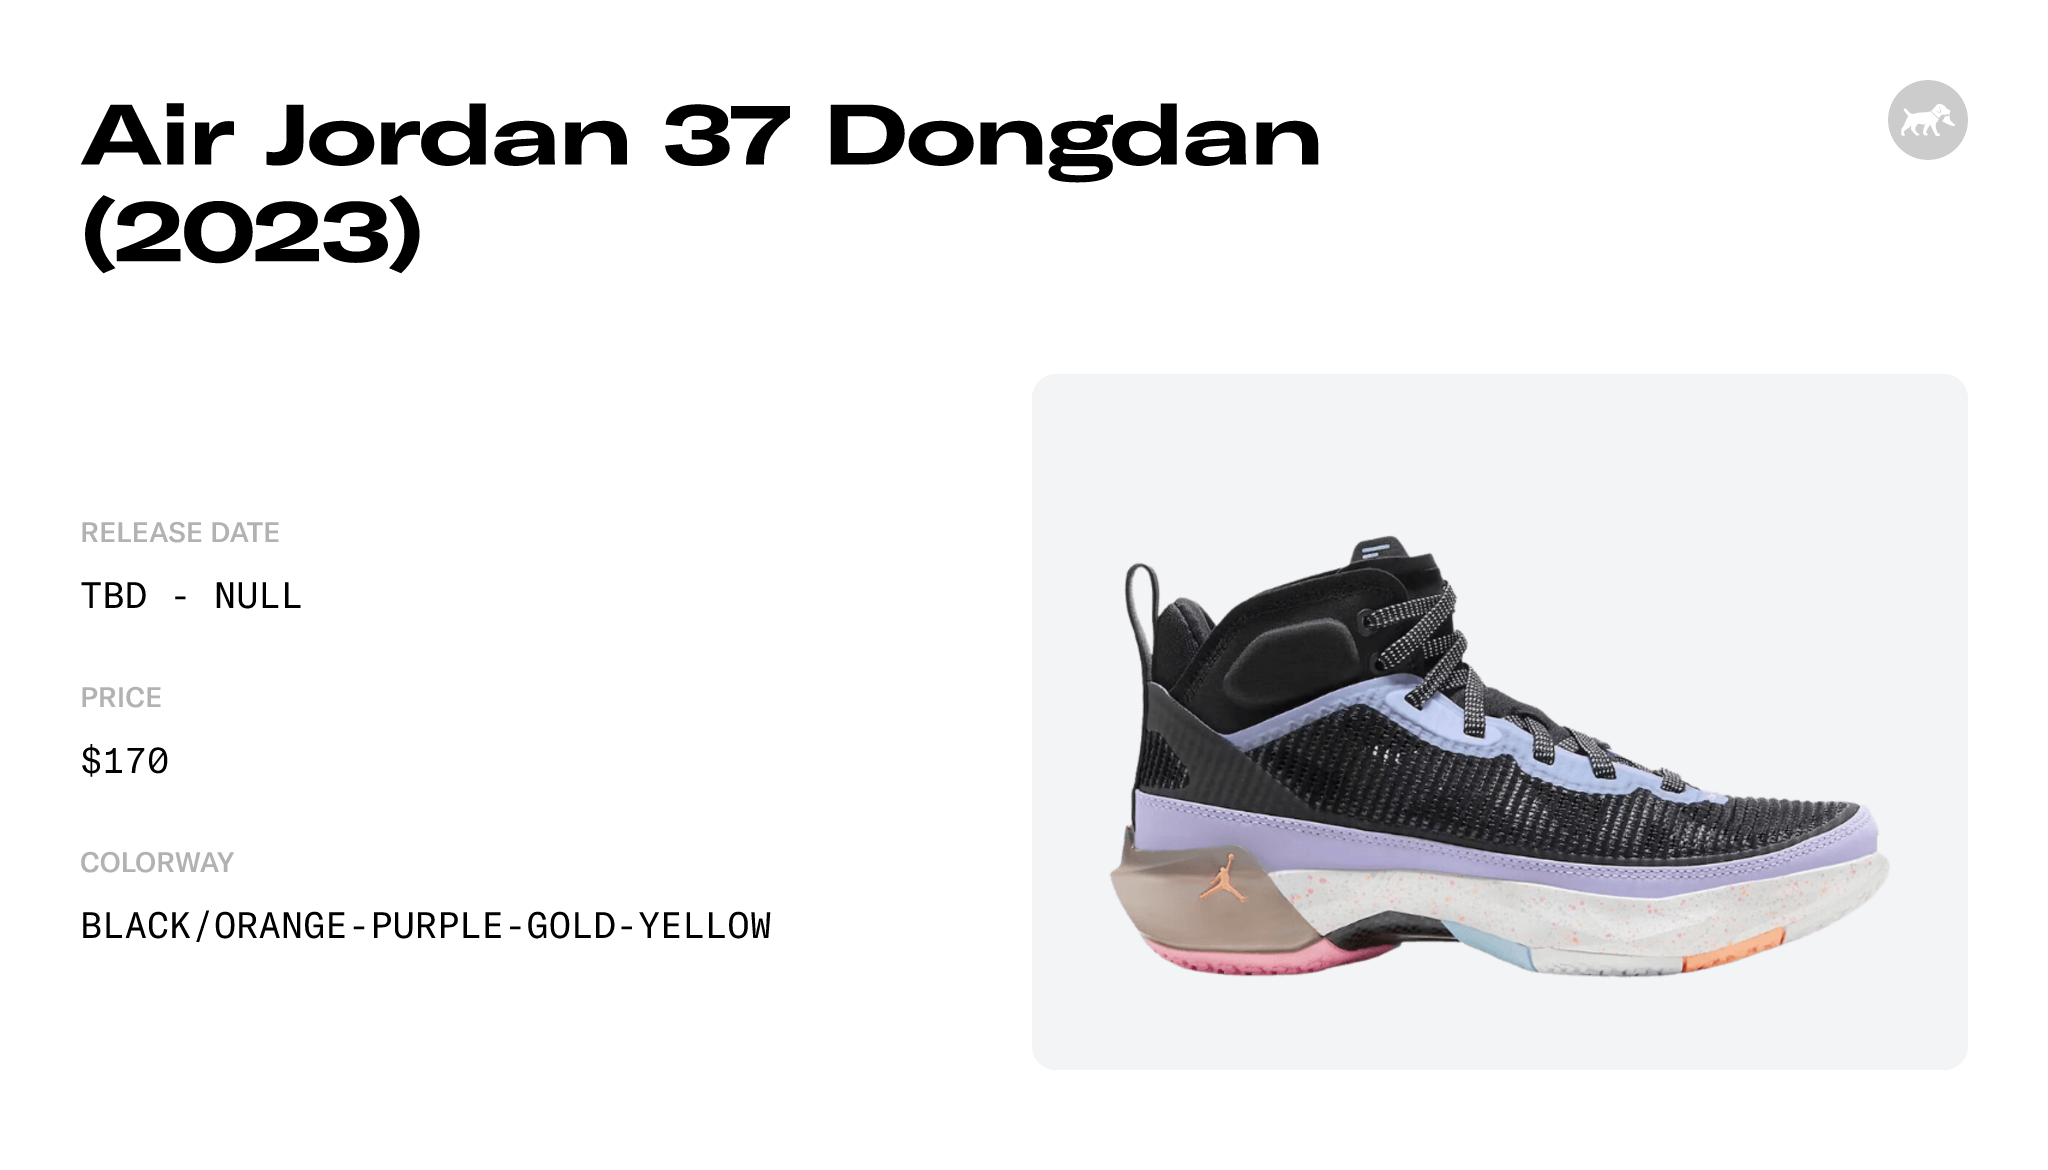 Air Jordan 37 Dongdan (2023) - FD8700-001 Raffles and Release Date